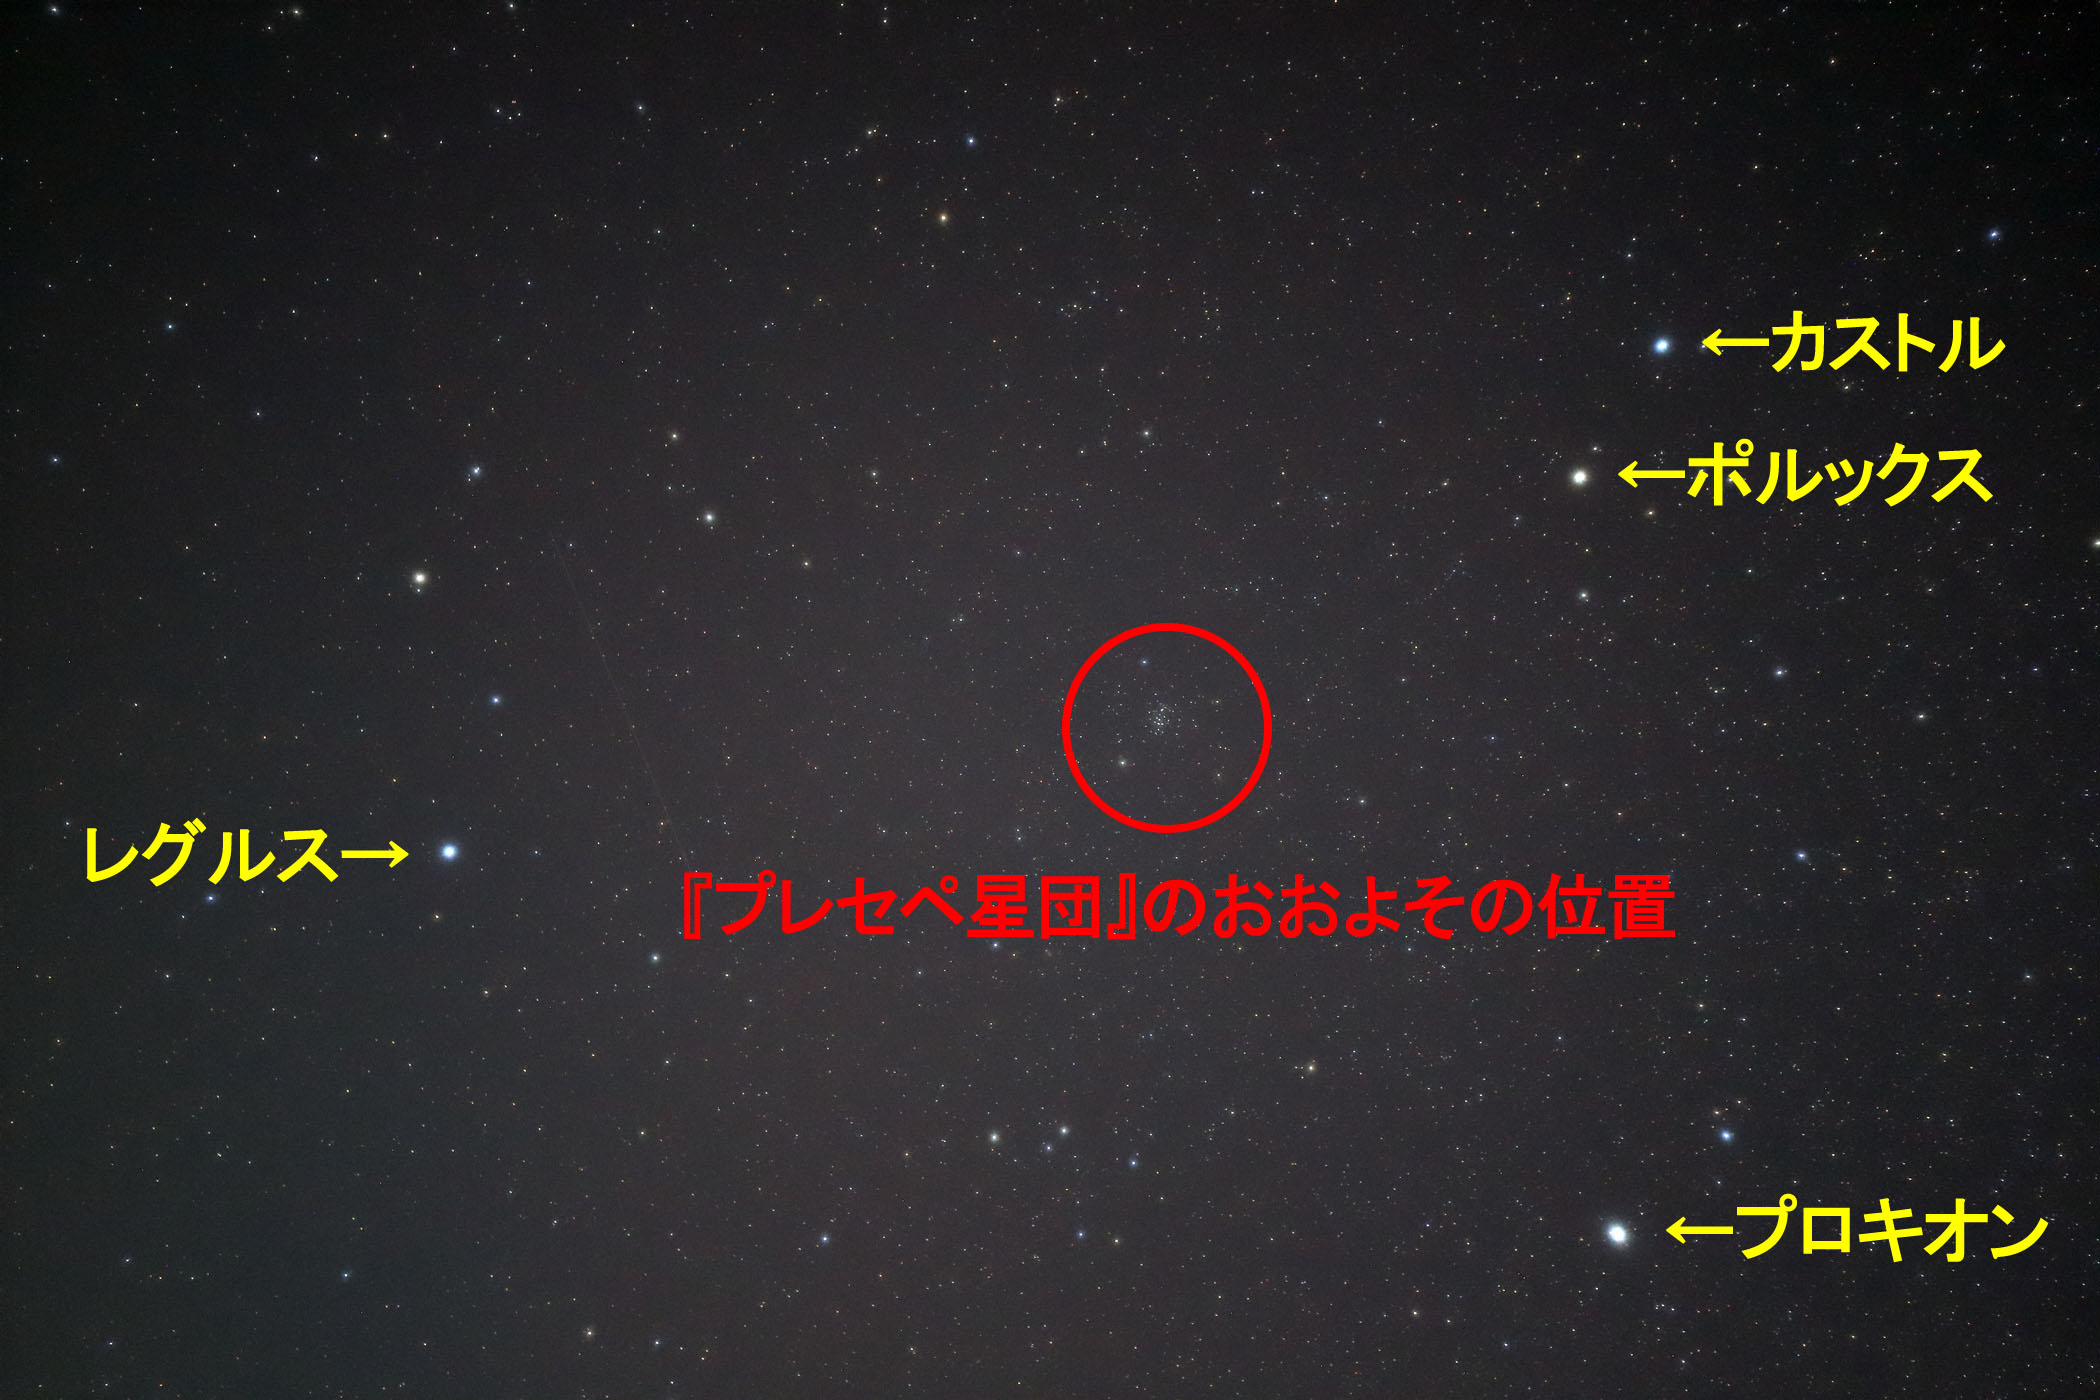 『プレセペ星団(M44)』のおおよその位置